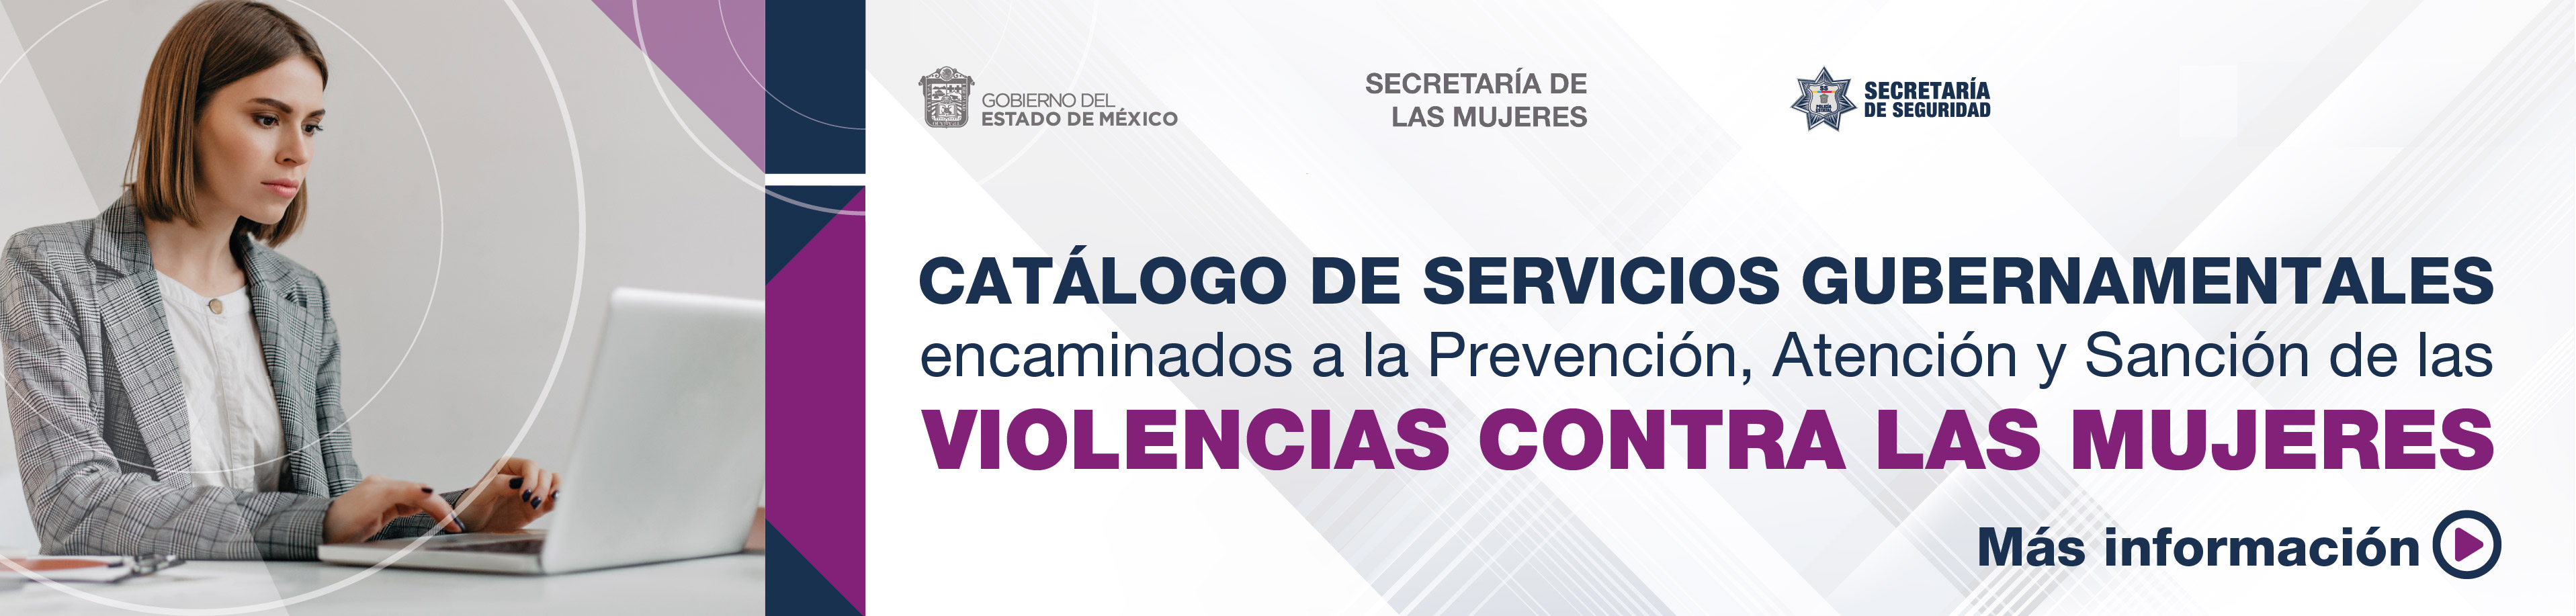 Catálogo de Servicios Gubernamentales, violencias contra las mujeres